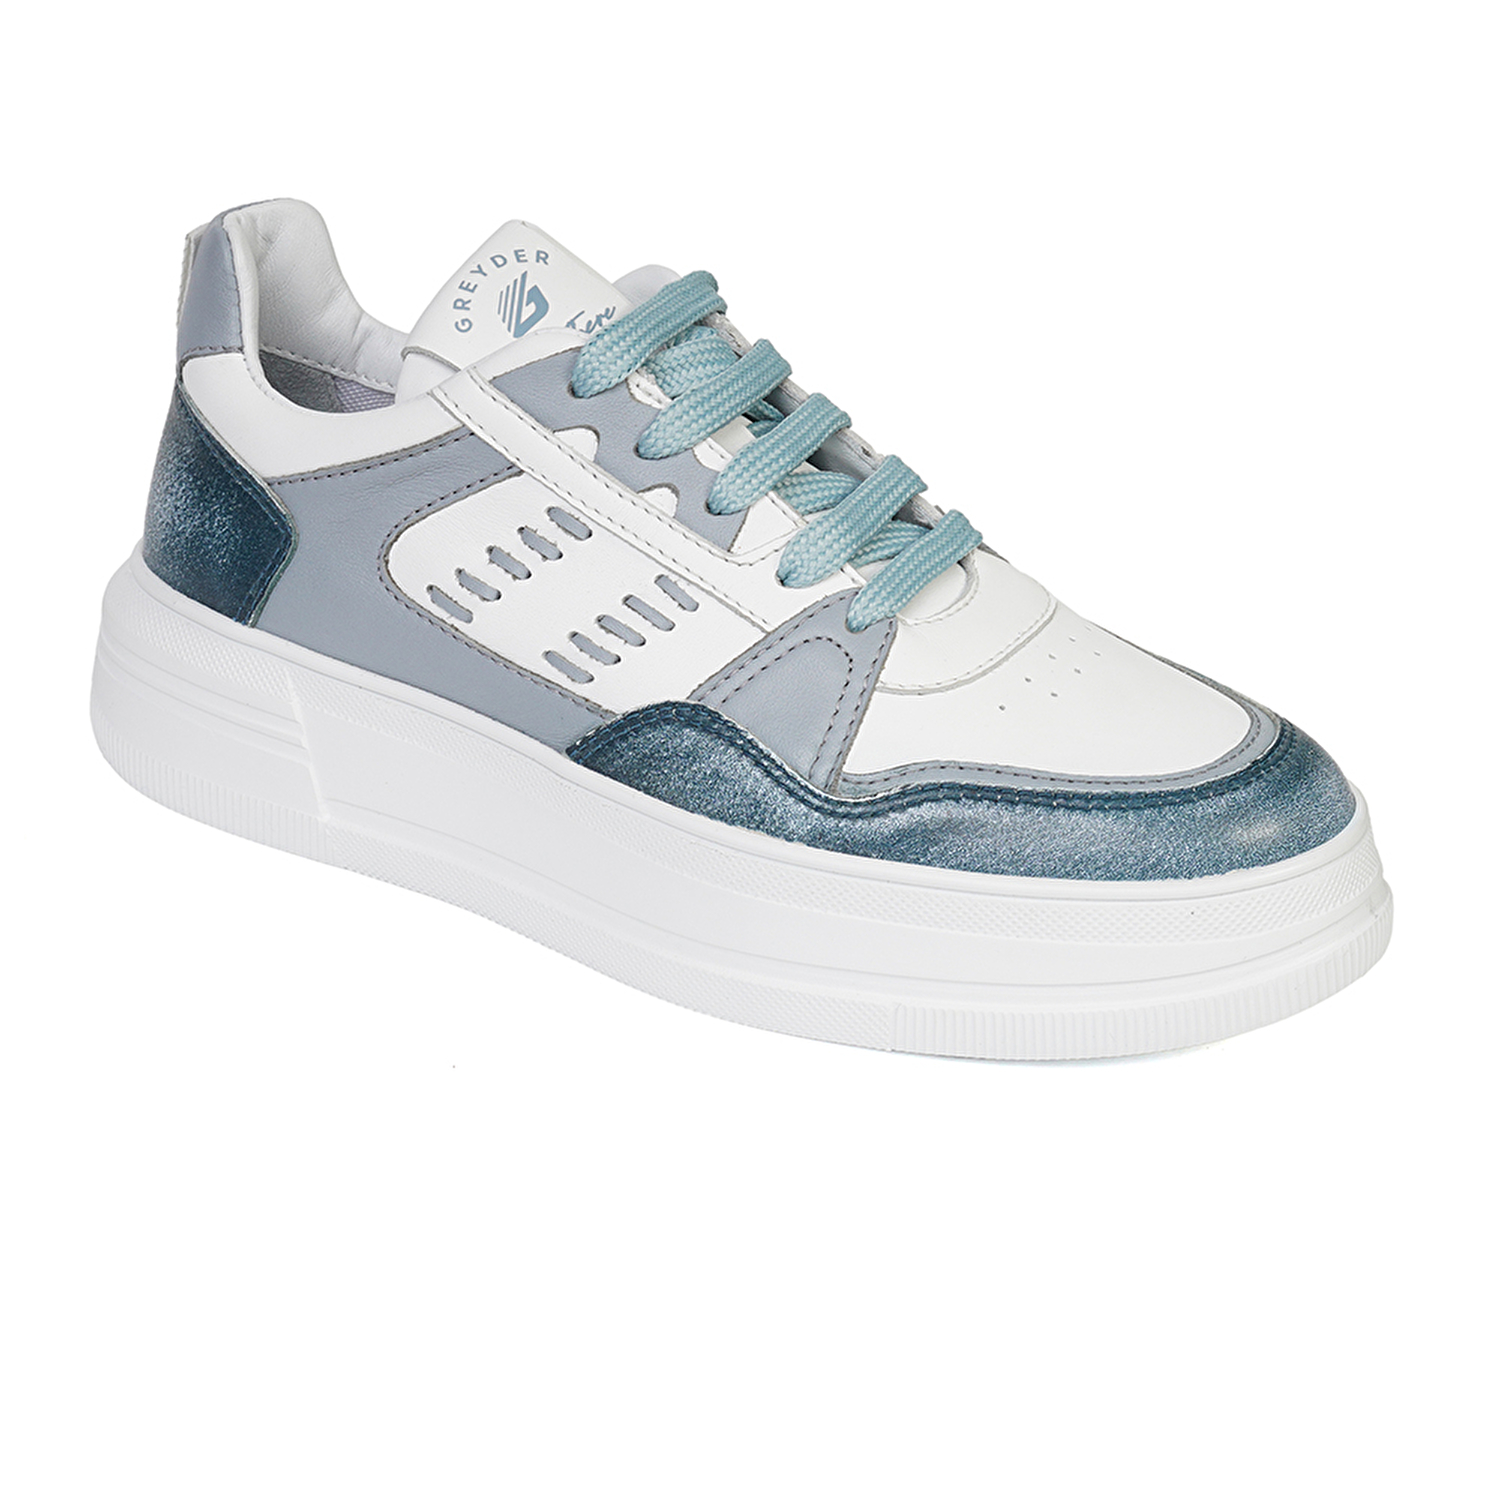 Kadın Mavi Beyaz Hakiki Deri Sneaker Ayakkabı 4Y2SA33220-1